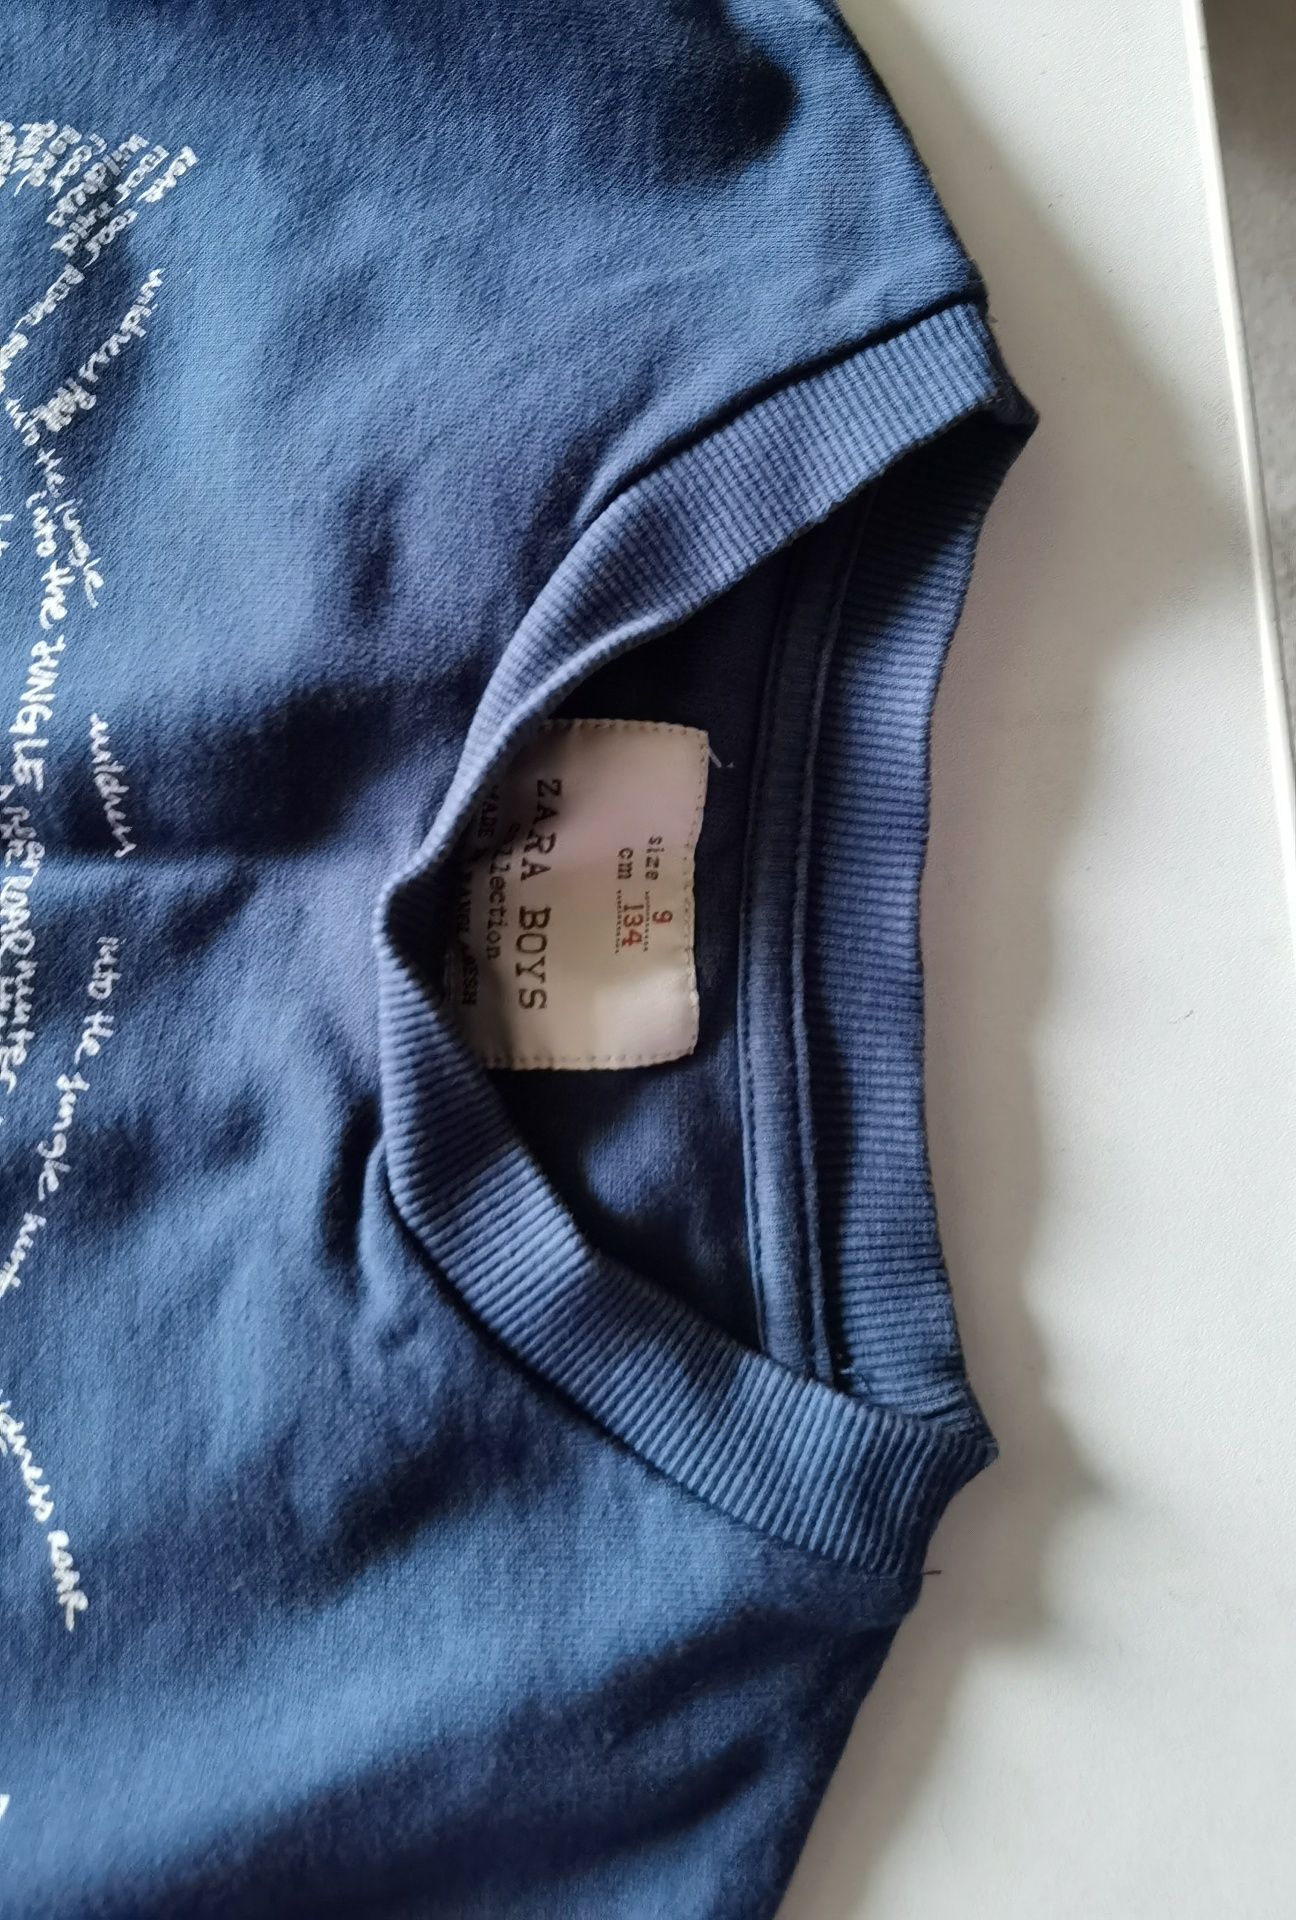 Bluza Zara, tricouri Pokemon si Ironman 2